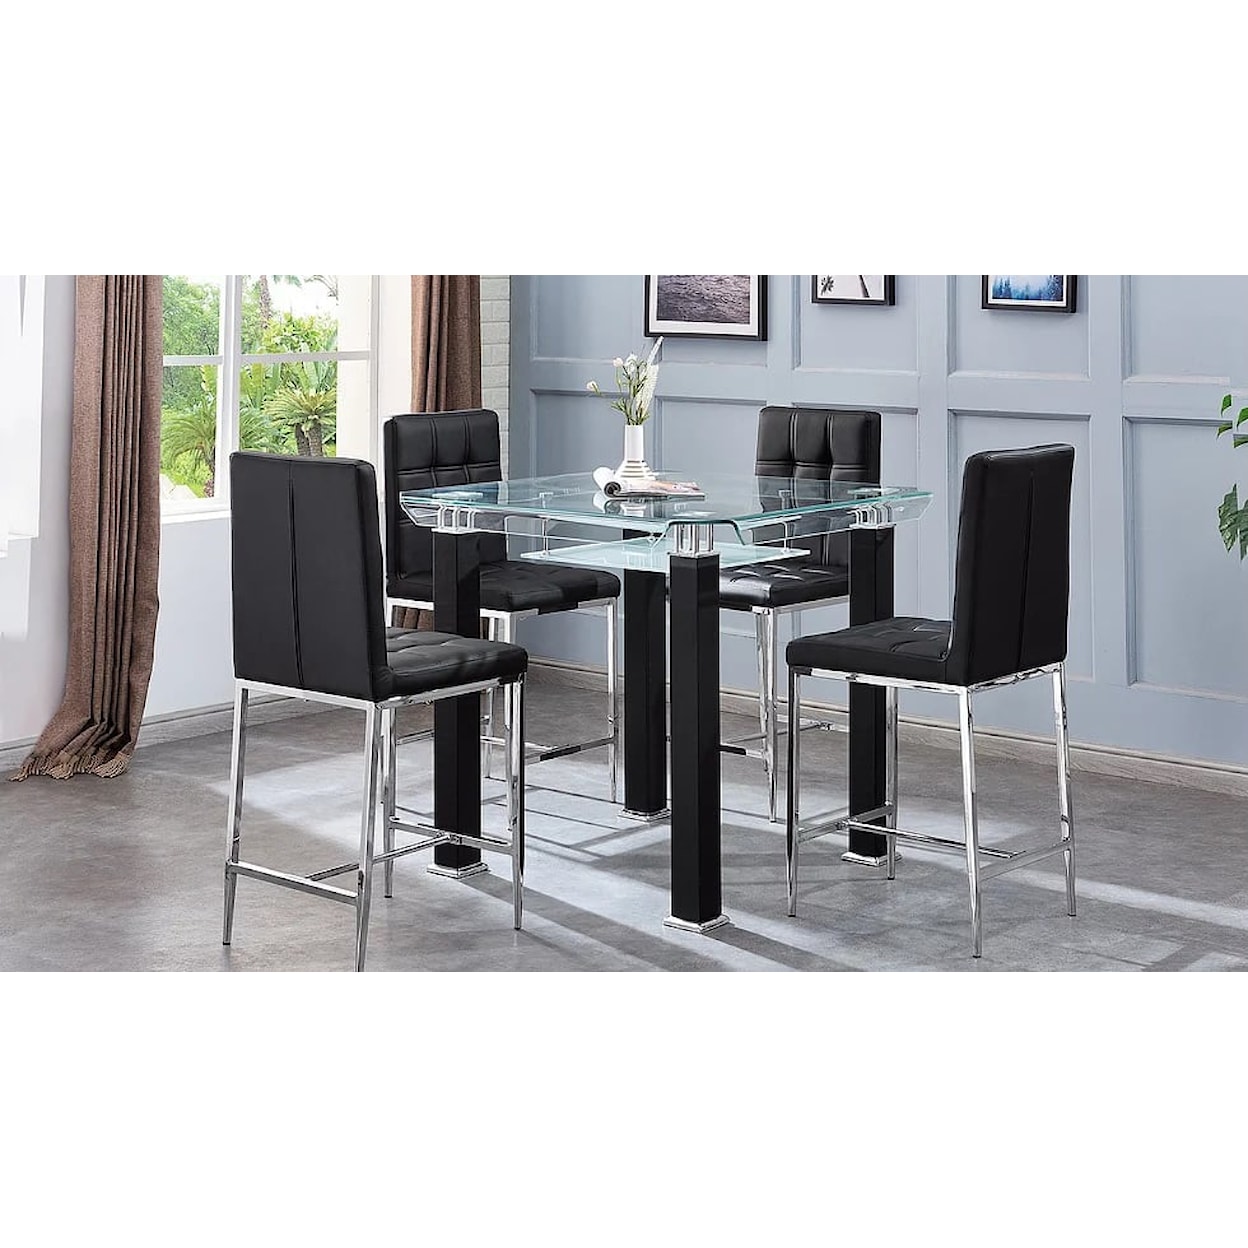 Artisan Design Furniture King KING BLACK 5 PIECE PUB TABLE |